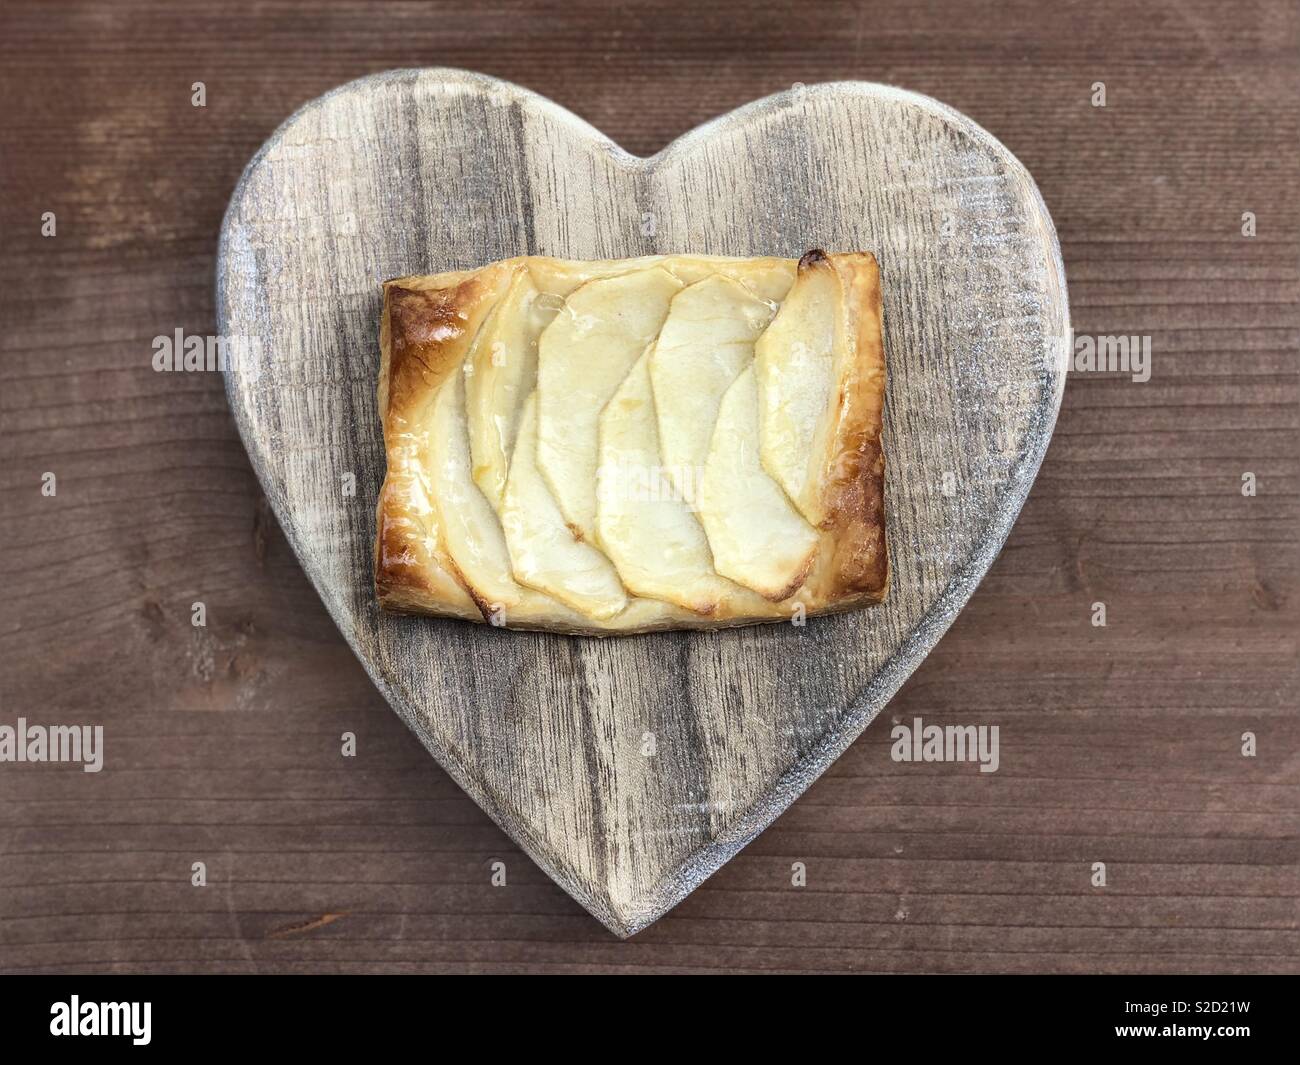 Love apple pie Stock Photo